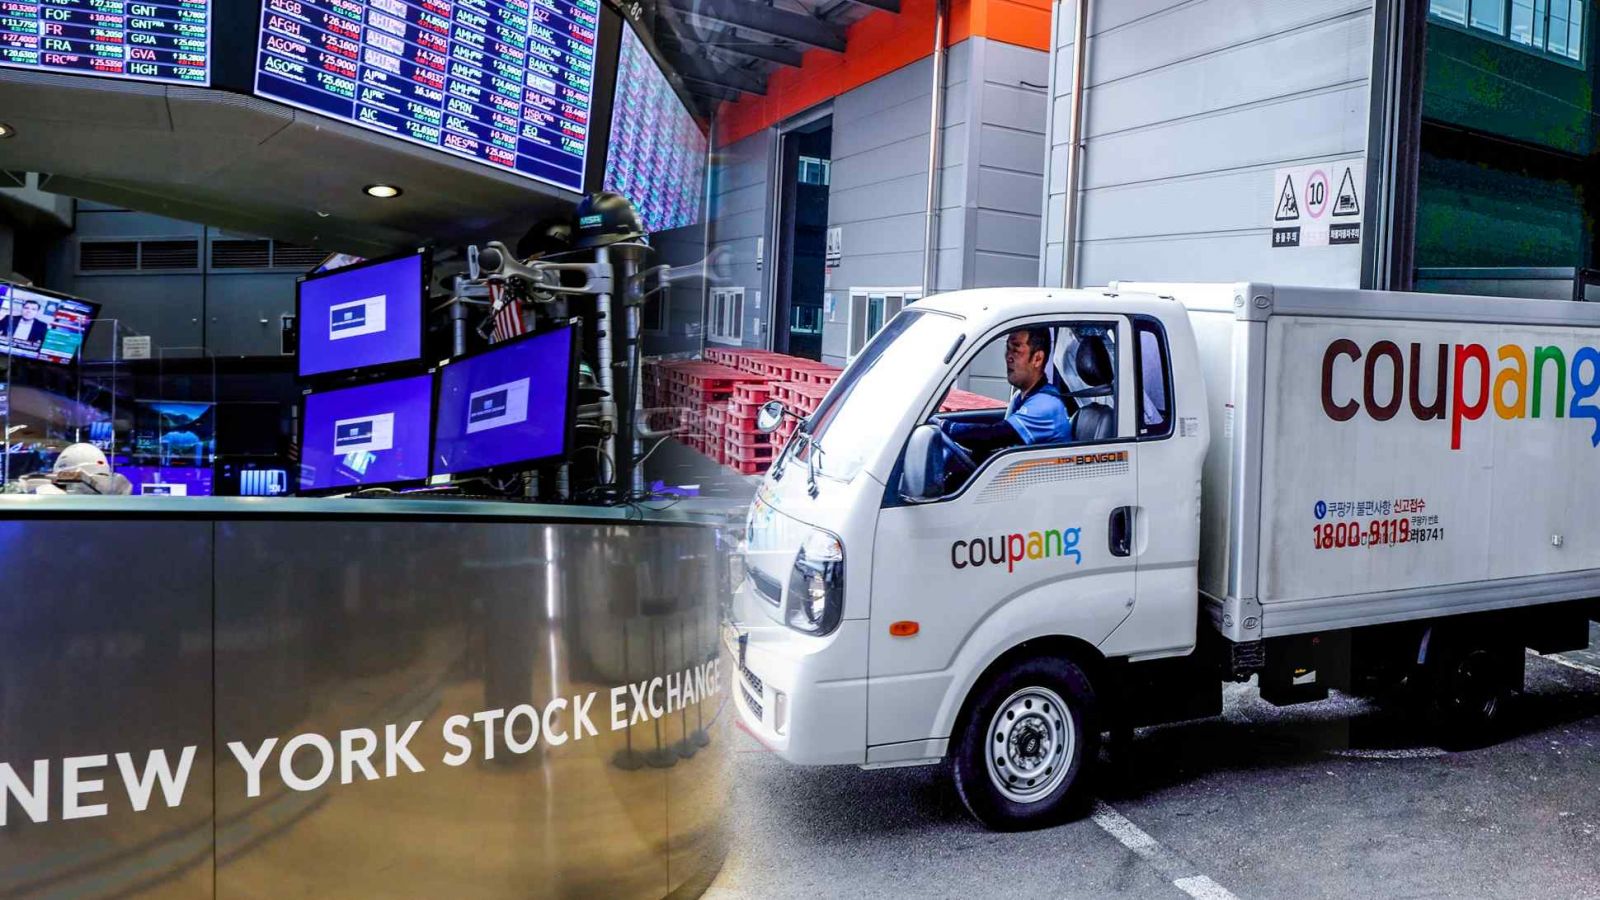 Coupang của Hàn Quốc, một ông lớn trong thị trường thương mại điện tử, đã gây chú ý khi ra mắt trên Sàn giao dịch chứng khoán New York. (Nguồn ảnh Reuters)